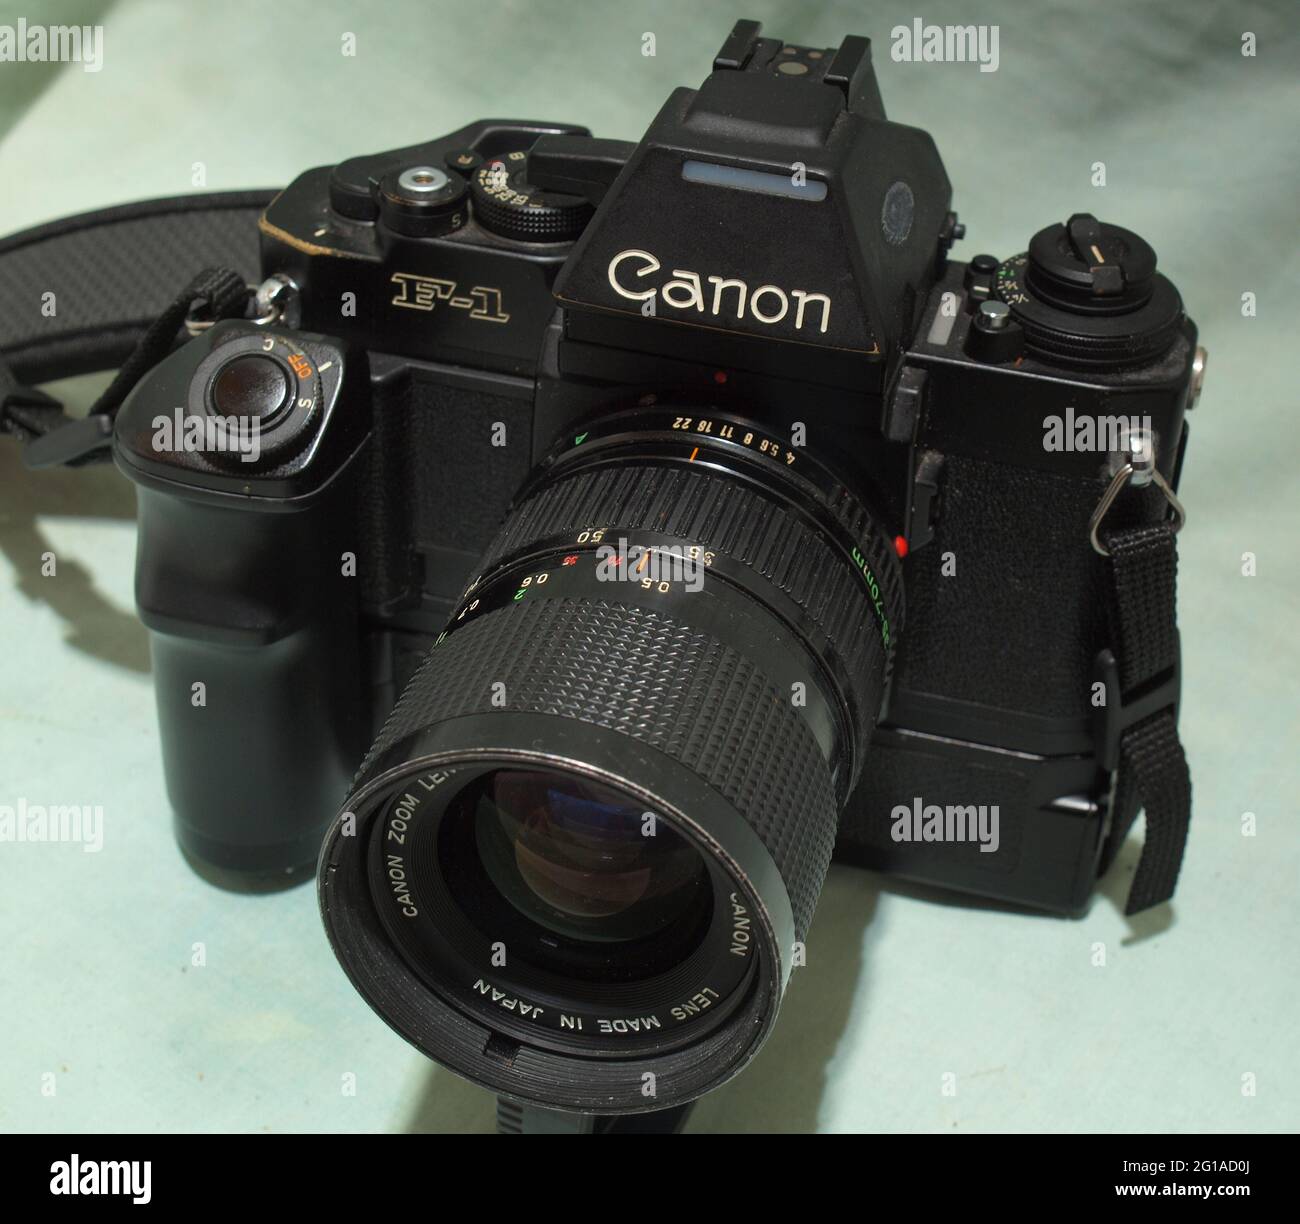 カメラ フィルムカメラ Canon f1 camera hi-res stock photography and images - Alamy